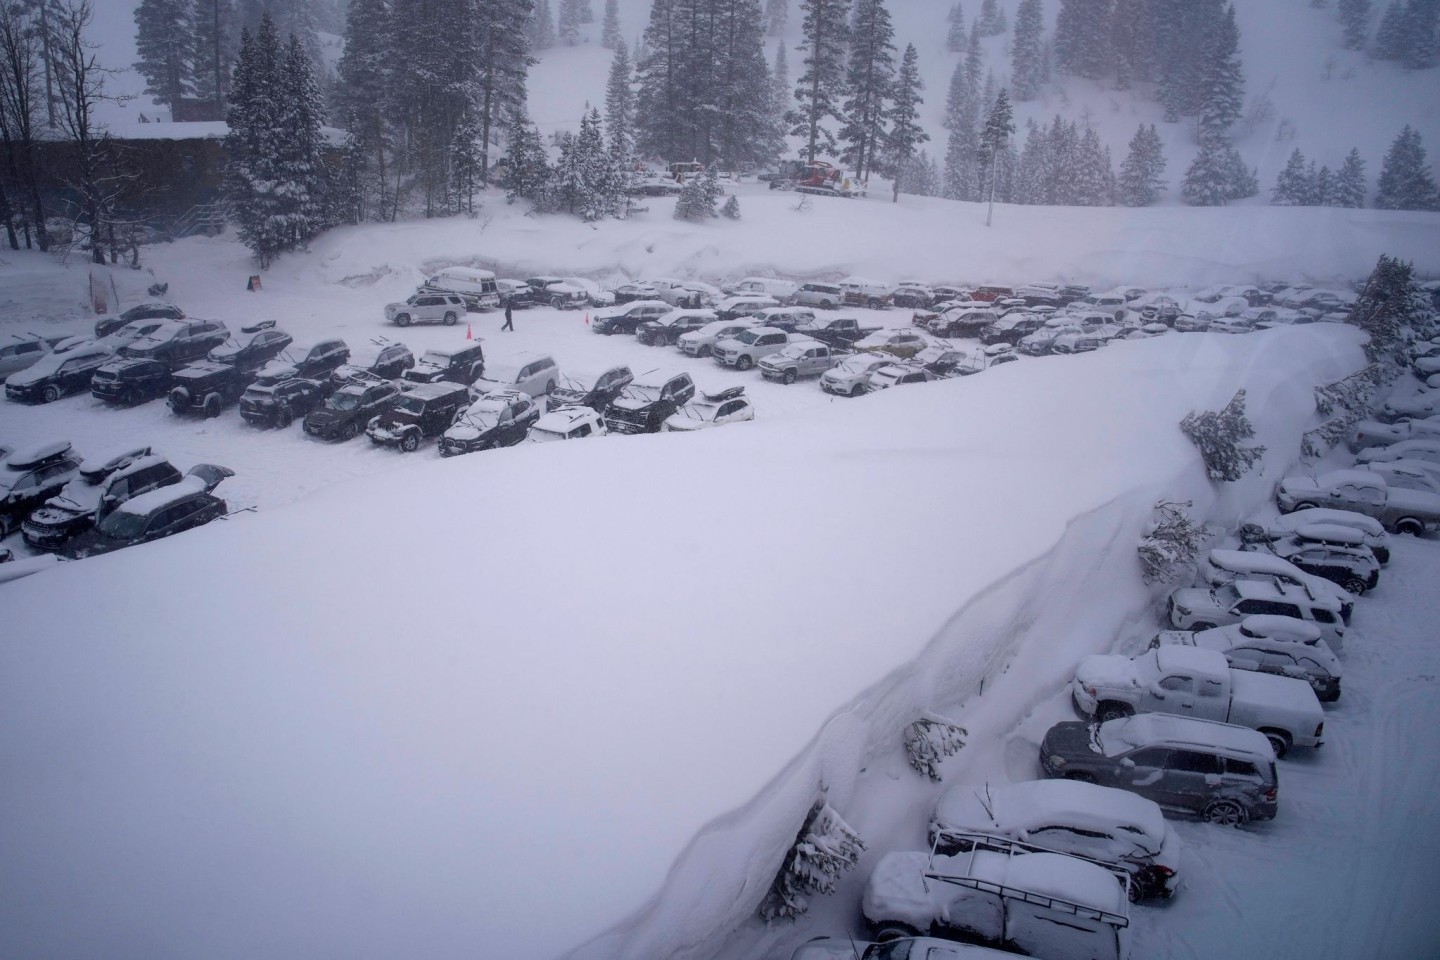 Kalifornien und andere Teile des Westens der USA sind durch den jüngsten Wintersturm, der die Vereinigten Staaten heimgesucht hat, mit starkem Schnee und Regen konfrontiert.